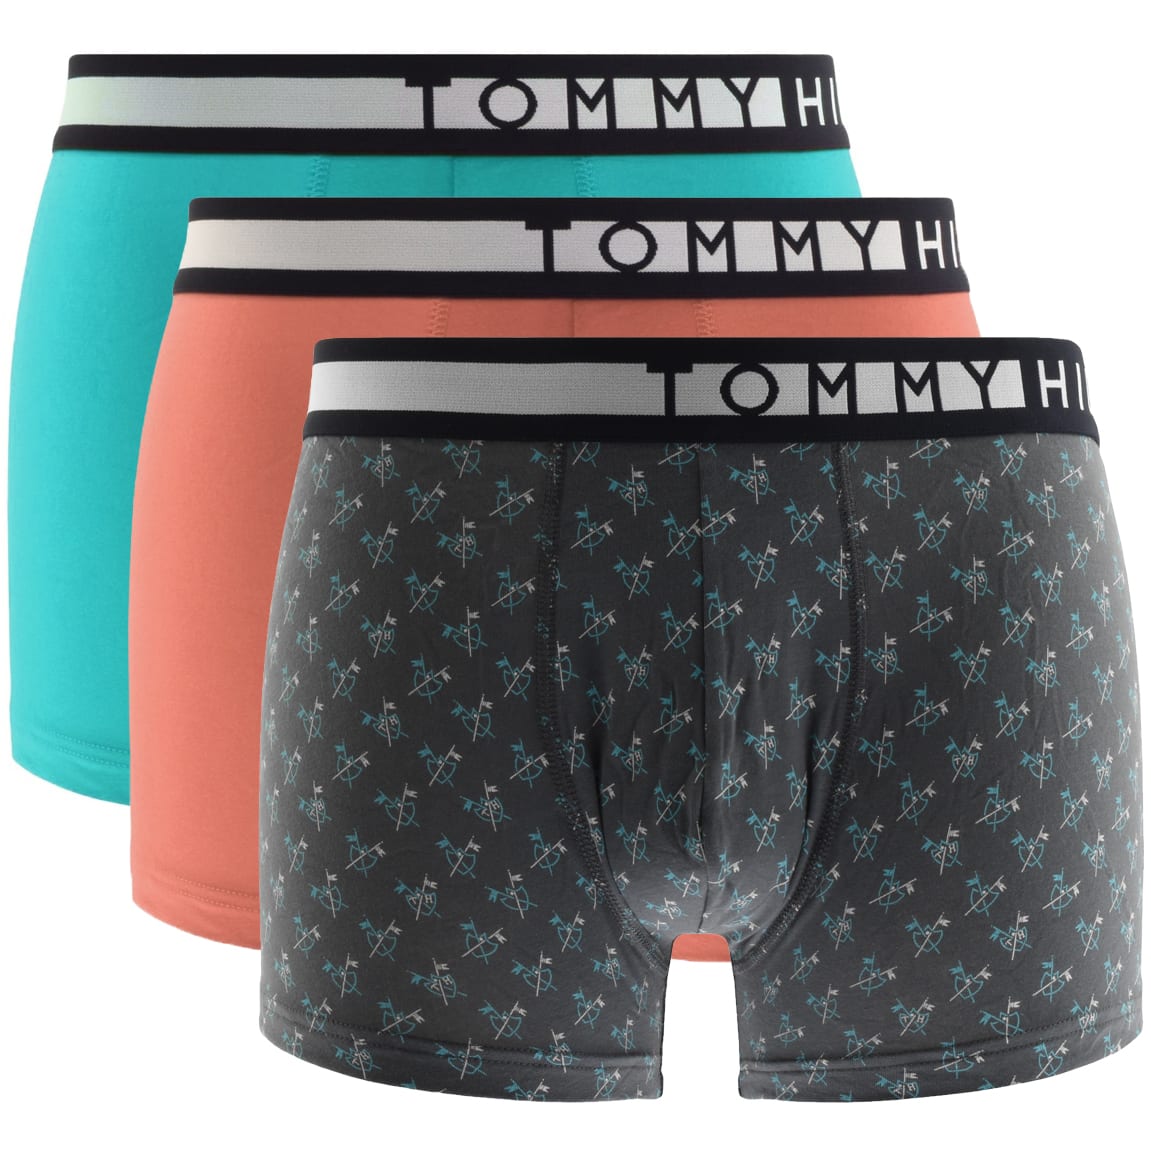 tommy hilfiger underwear pack